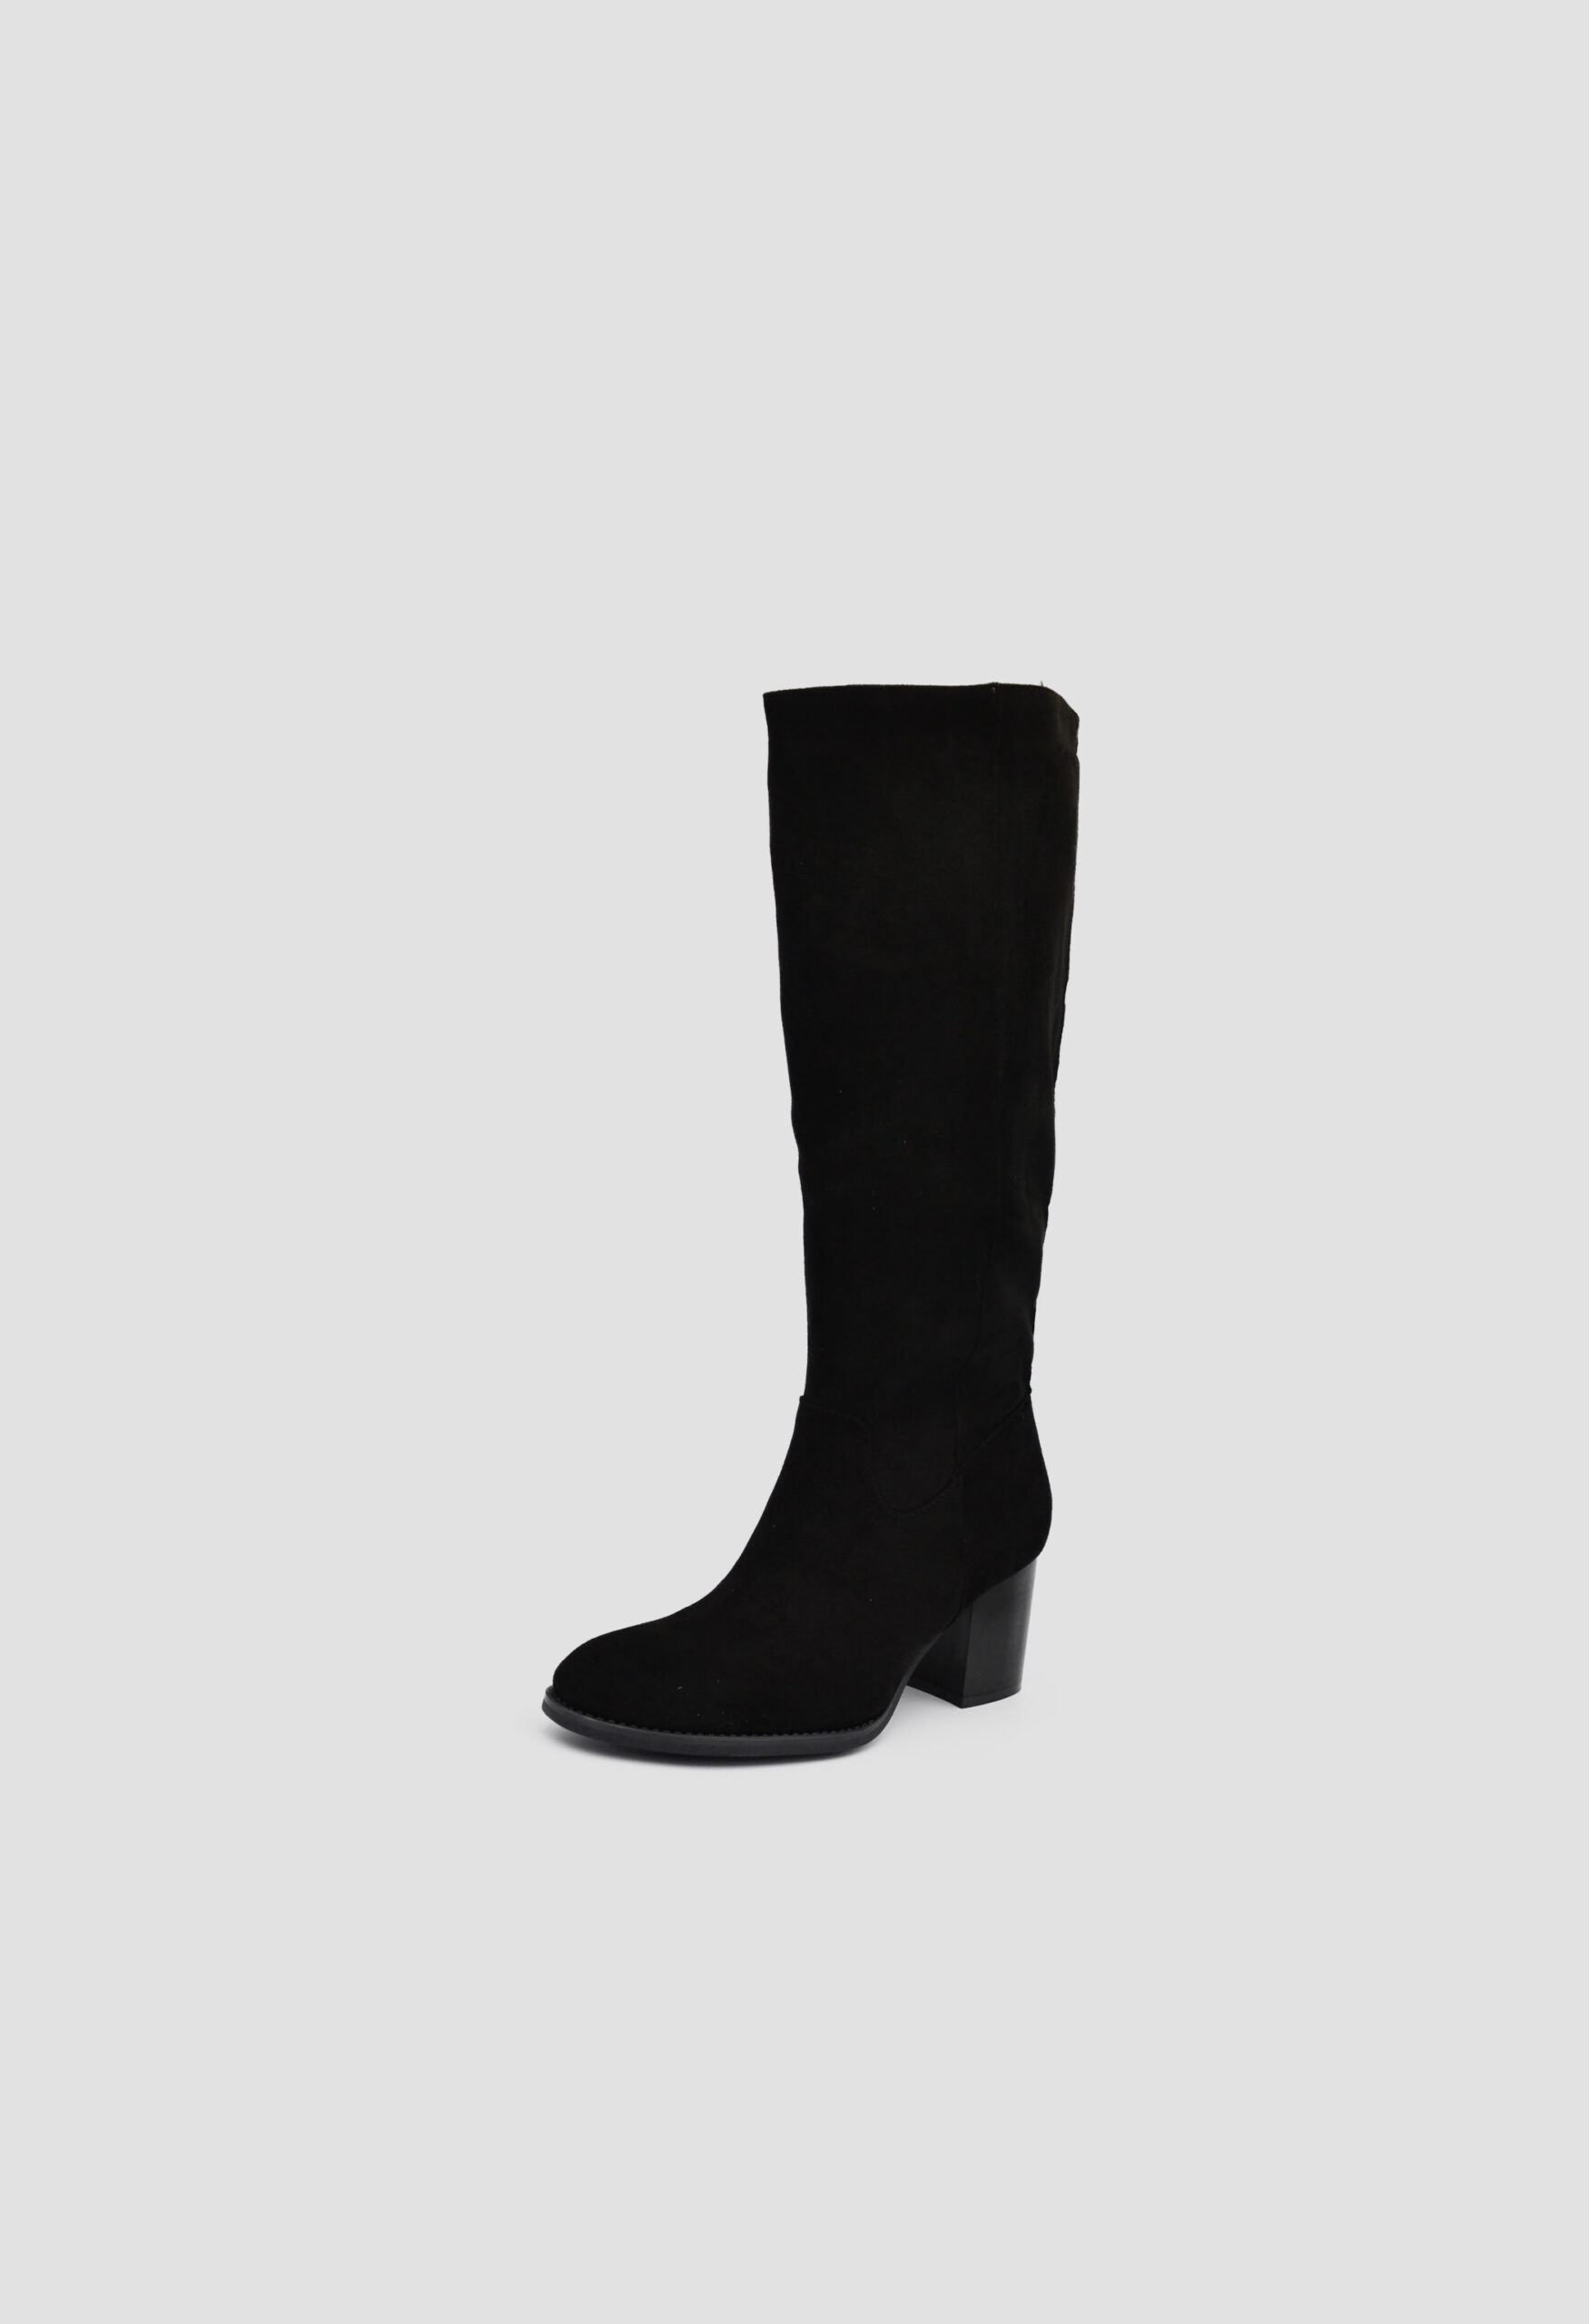 Suede Μπότες Χιονιού Κάλτσα Πάνω από το Γόνατο Μαύρες / Q846-black Γυναικεία Mπότες joya.gr